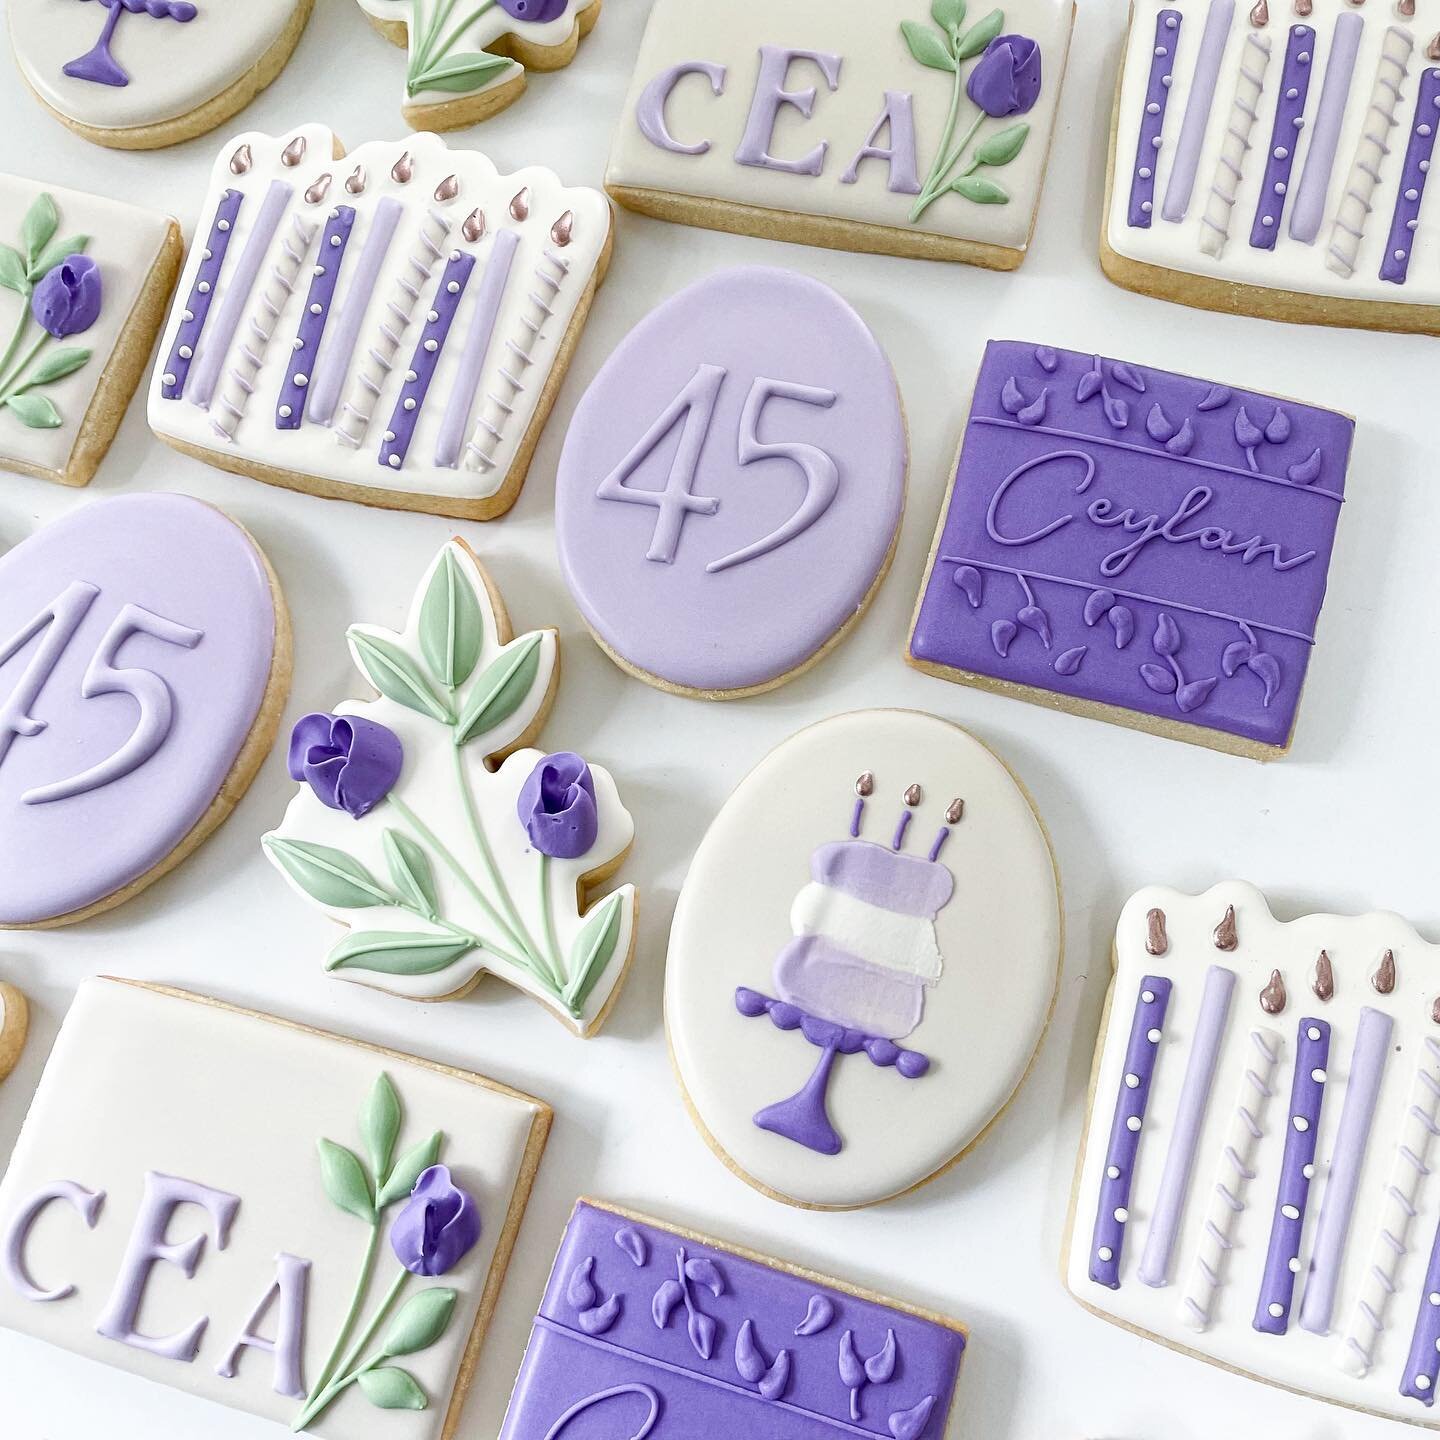 When the birthday gal loves purple 💜 

#birthdaycookies #monogramcookies #bespokecookies